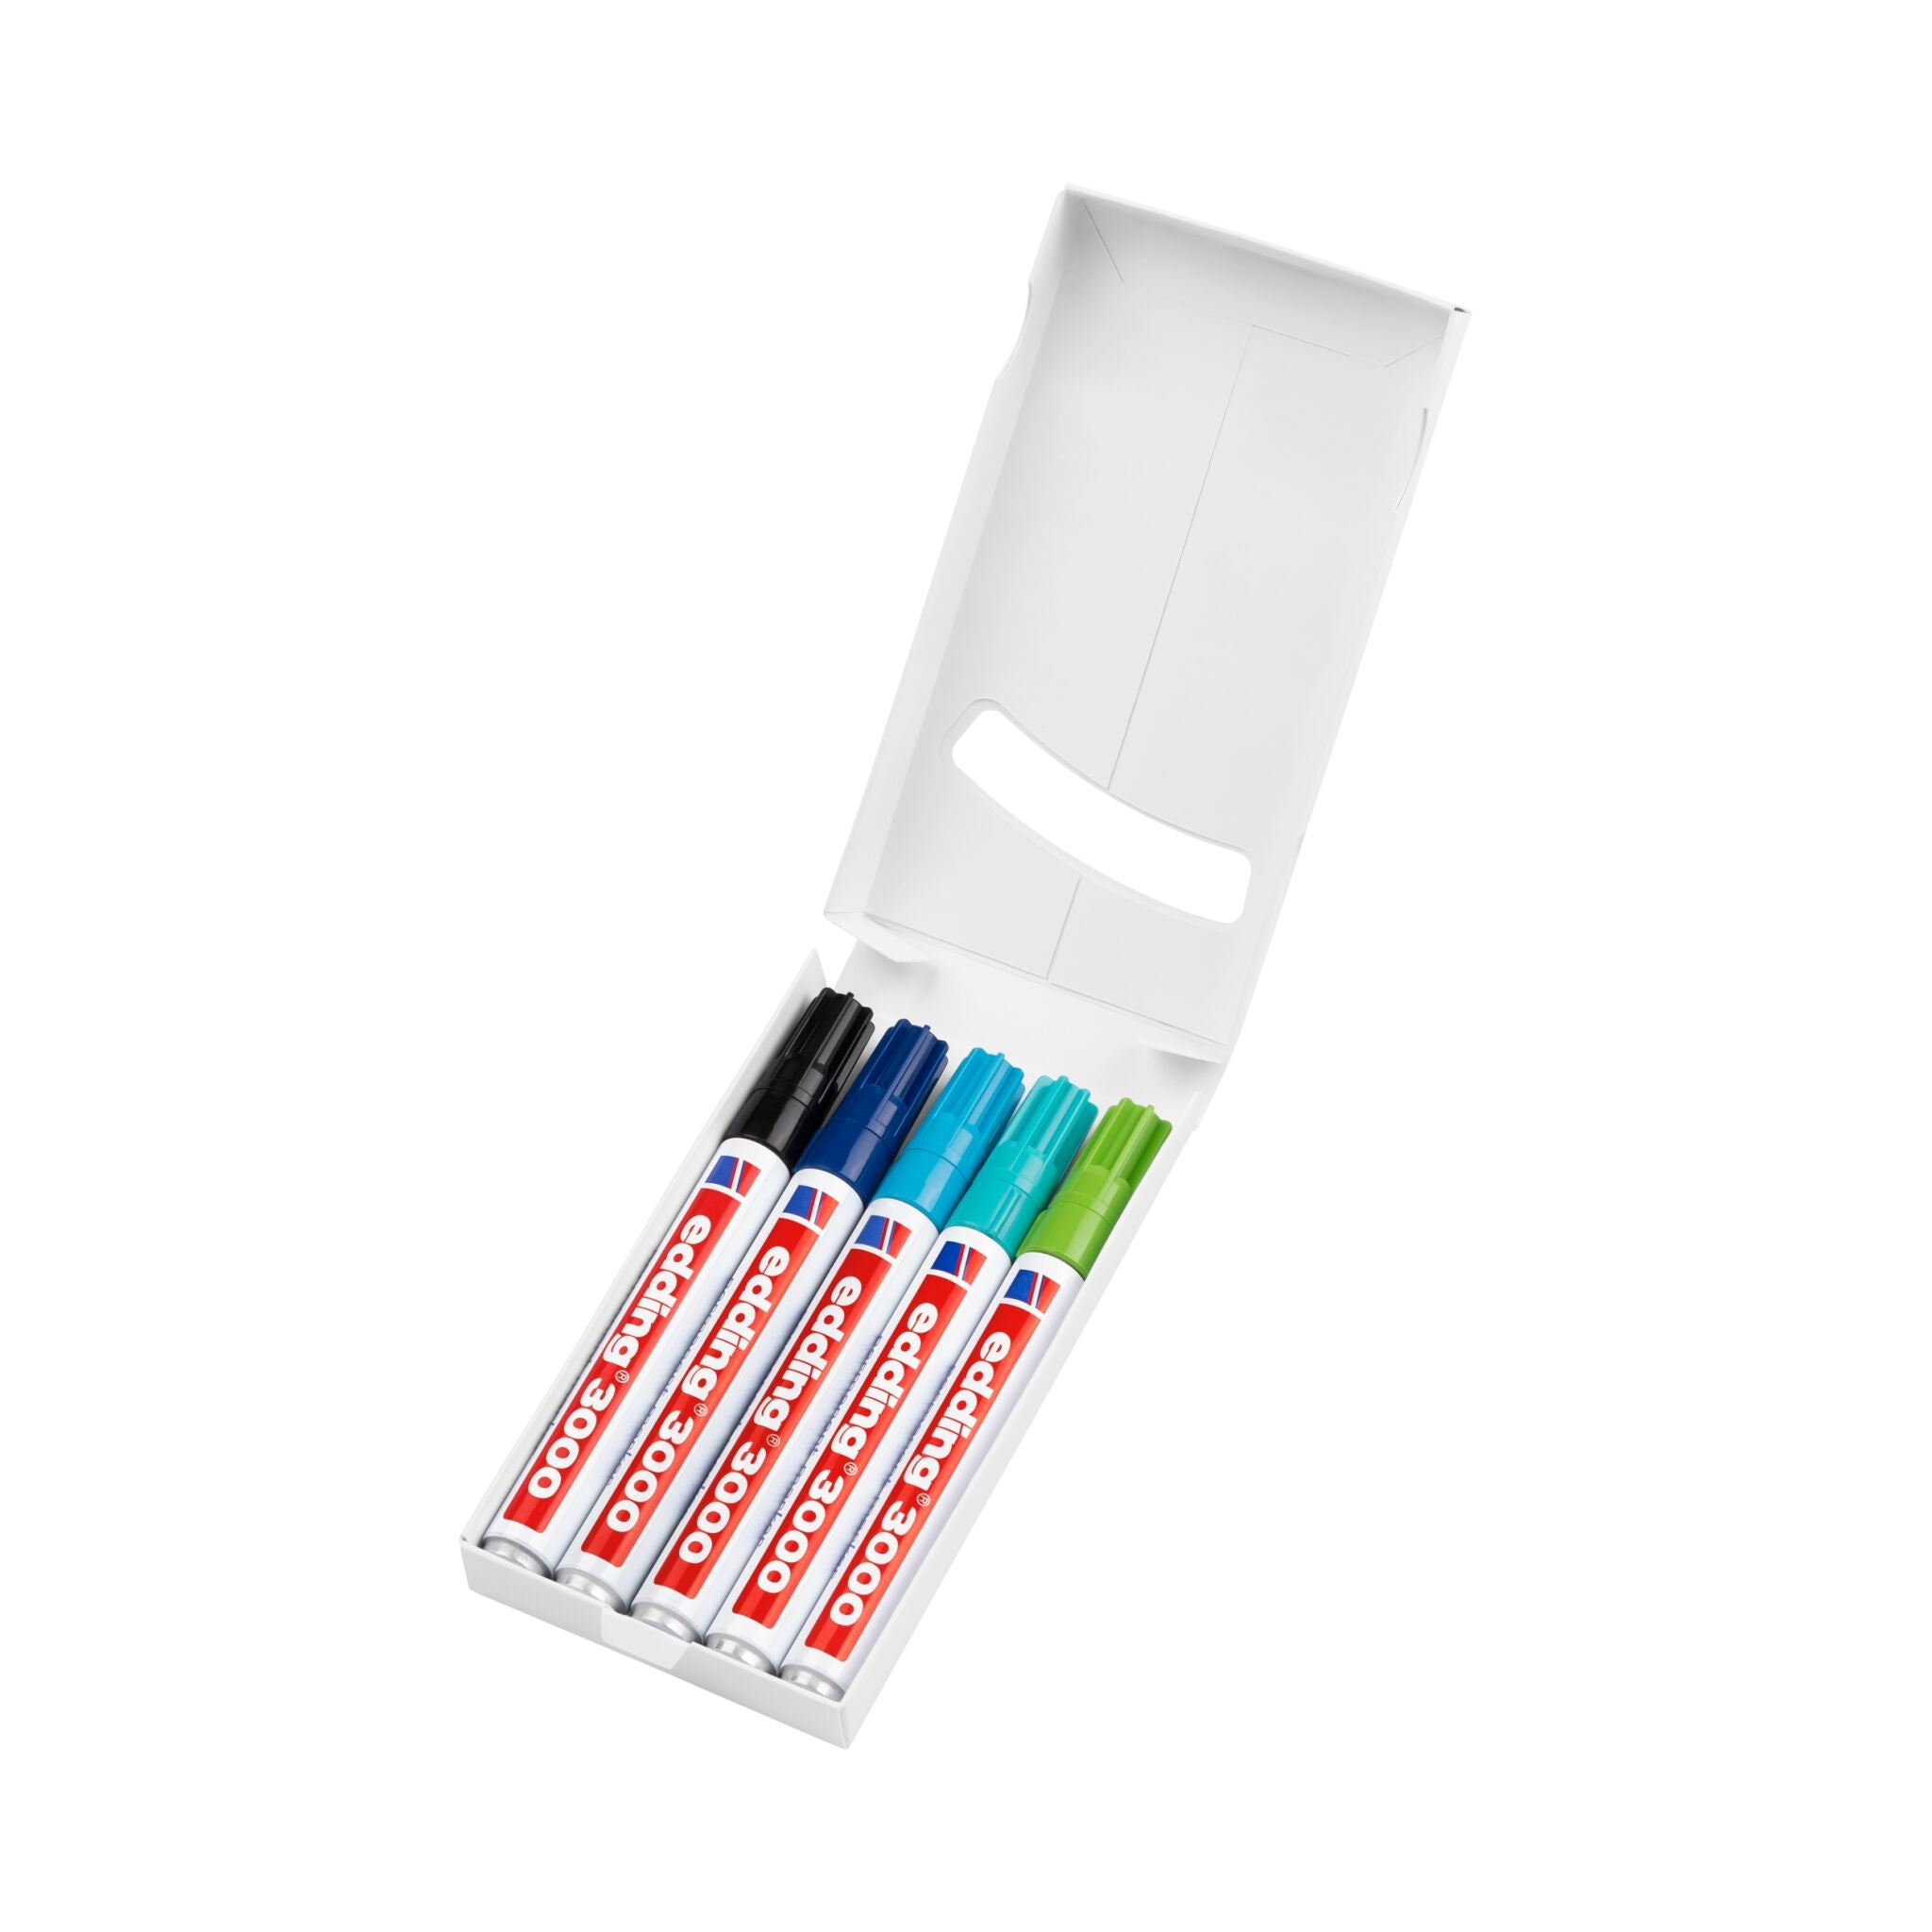 Ein Set mit vier farbenfrohen edding 3000 Permanentmarkern in den Farben Rot, Schwarz, Blau und Grün, übersichtlich angeordnet in einer offenen weißen Box auf weißem Hintergrund.